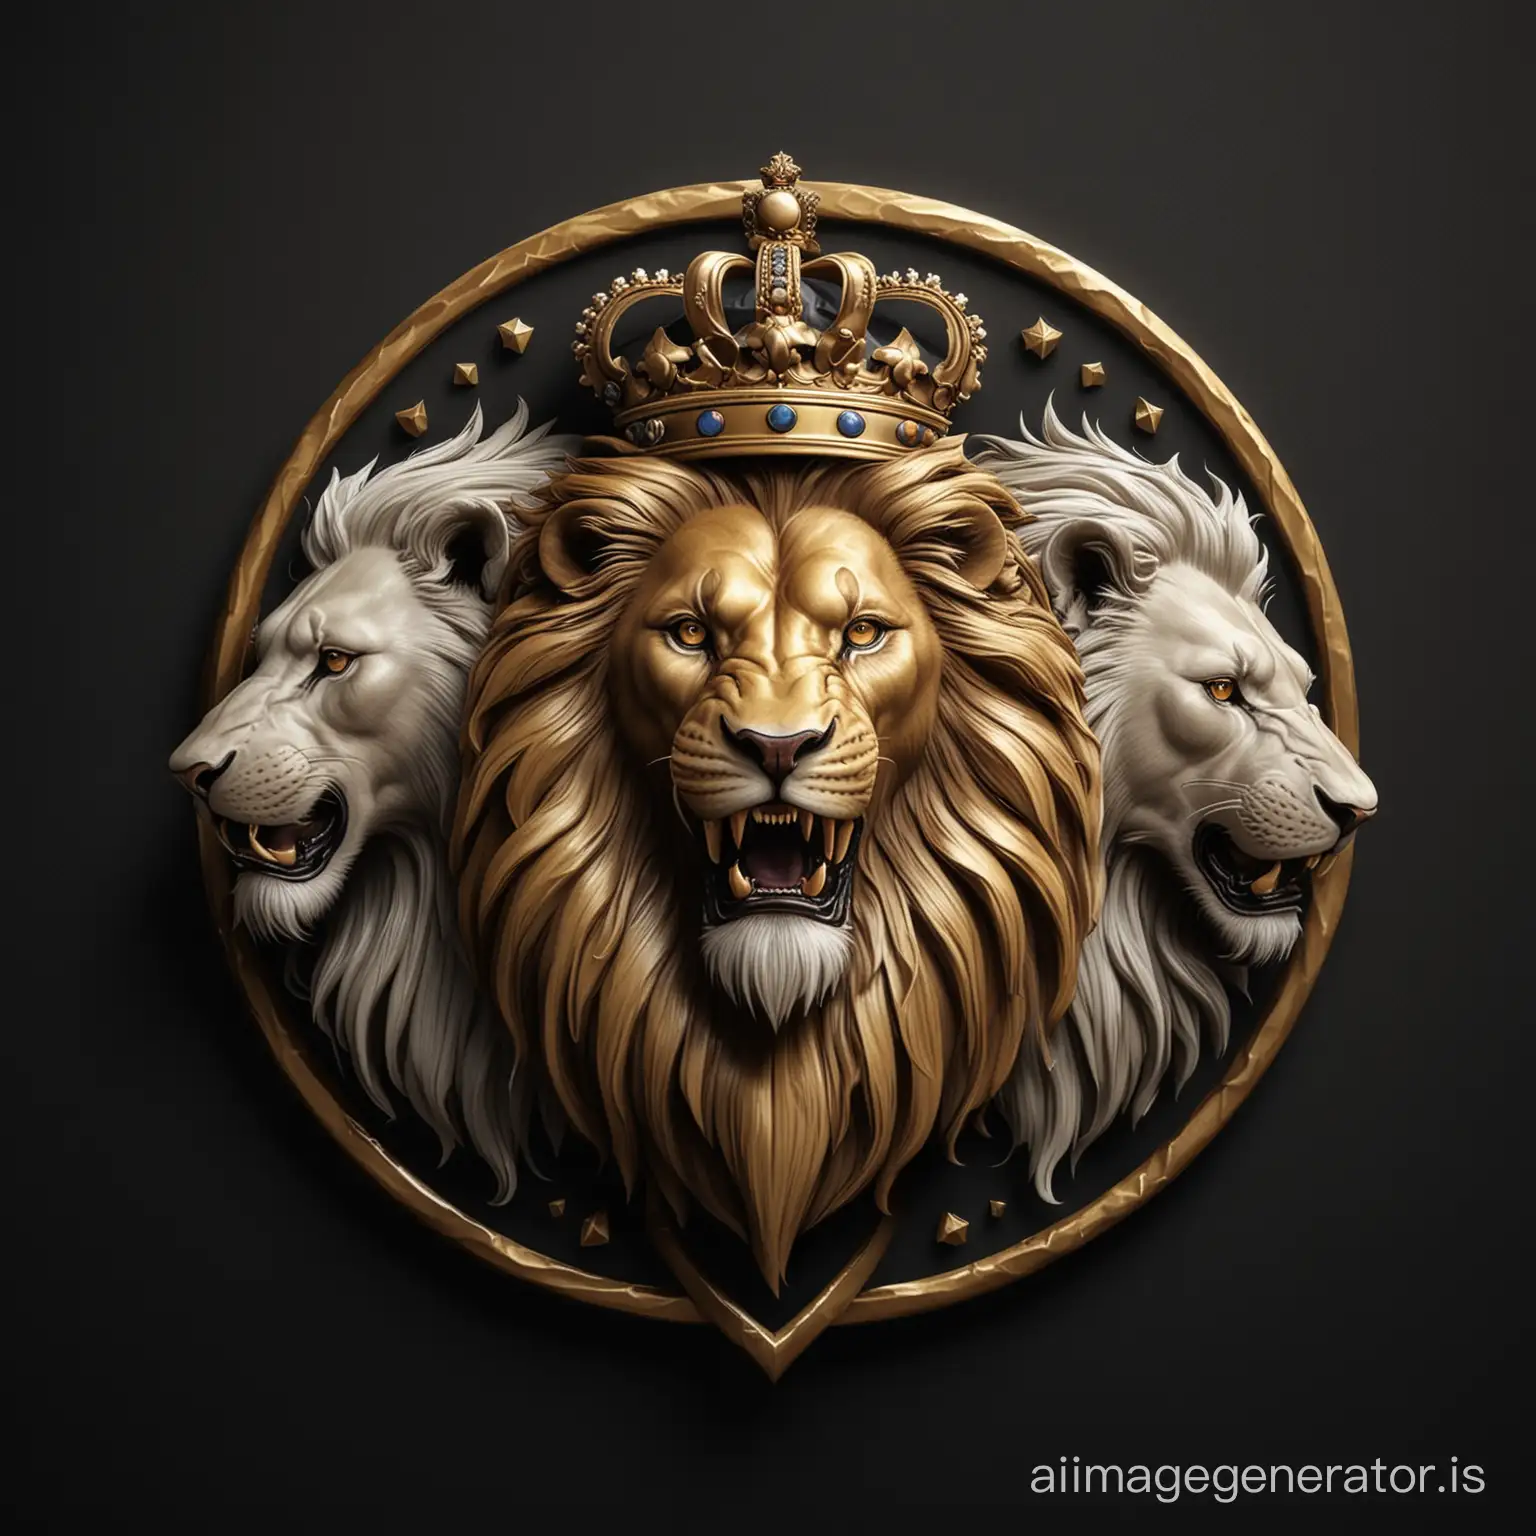 логотип три льва - черный, золотой, белый лев, рык, сила, мощь, власть. Векторная графика, иллюстрация, реализм, 4K, черный фон